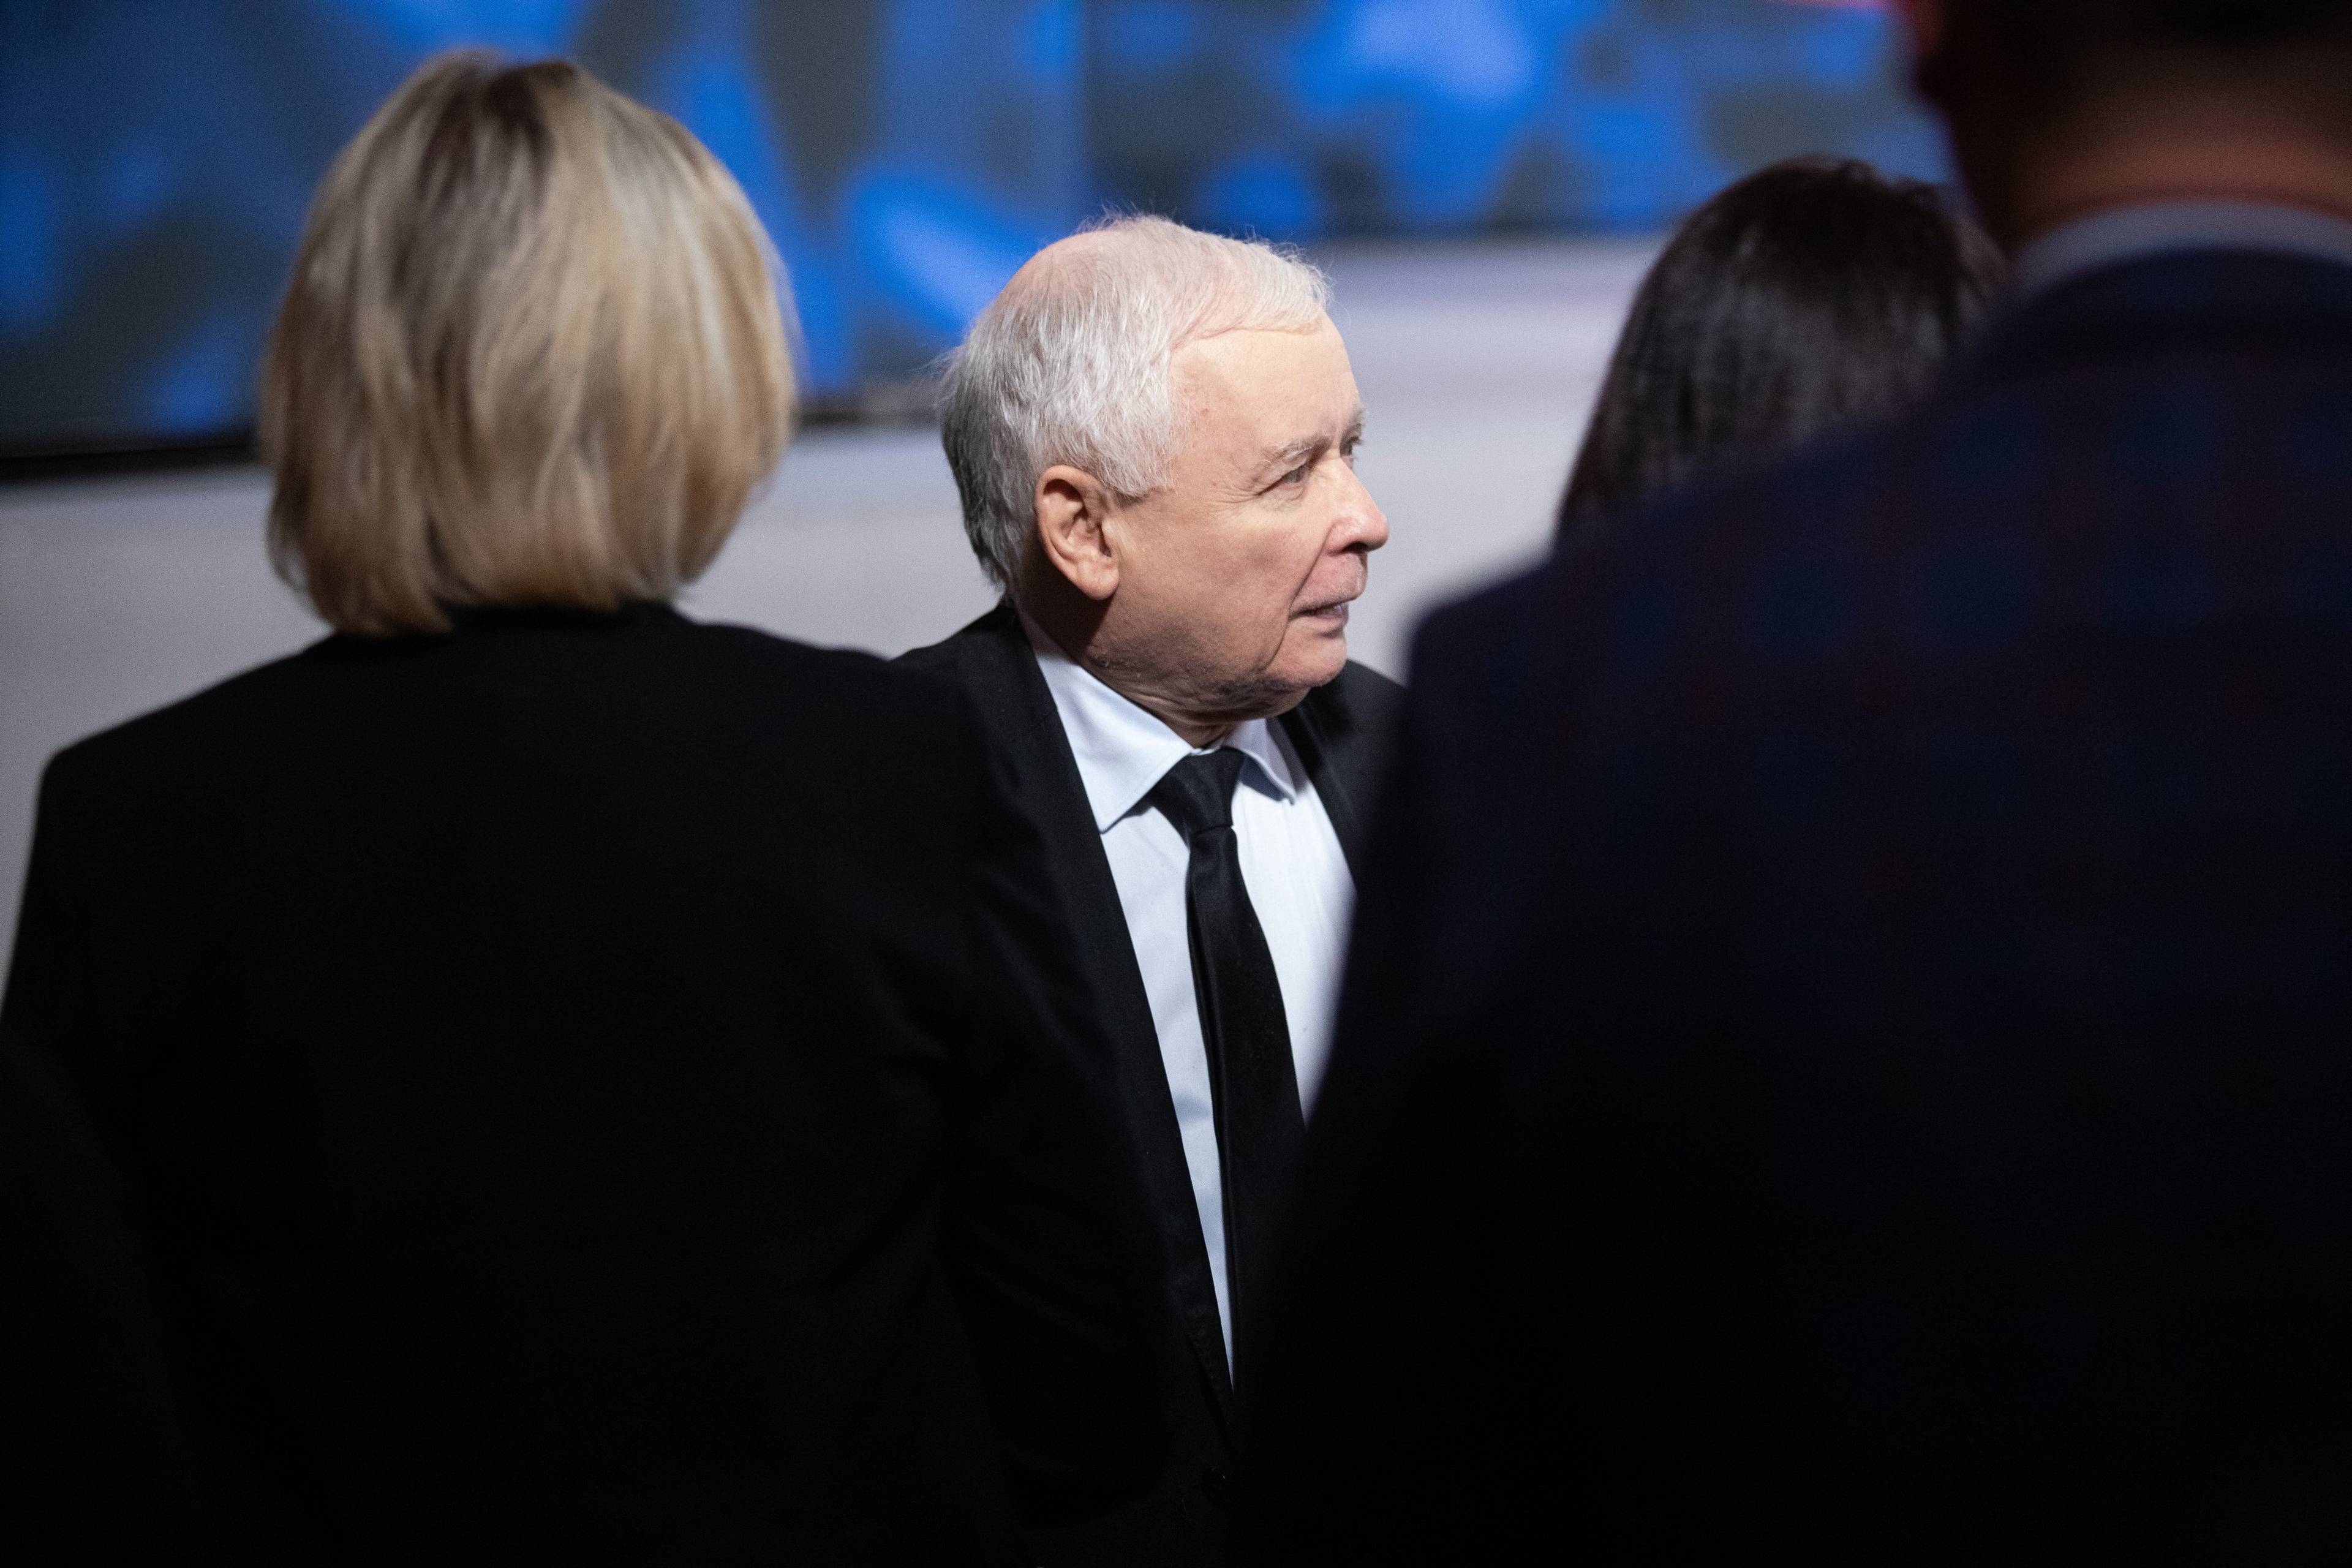 Prezes PiS Jarosław Kaczyński przesłonięty przez odwrócone plecami do kadru dwie kobiety